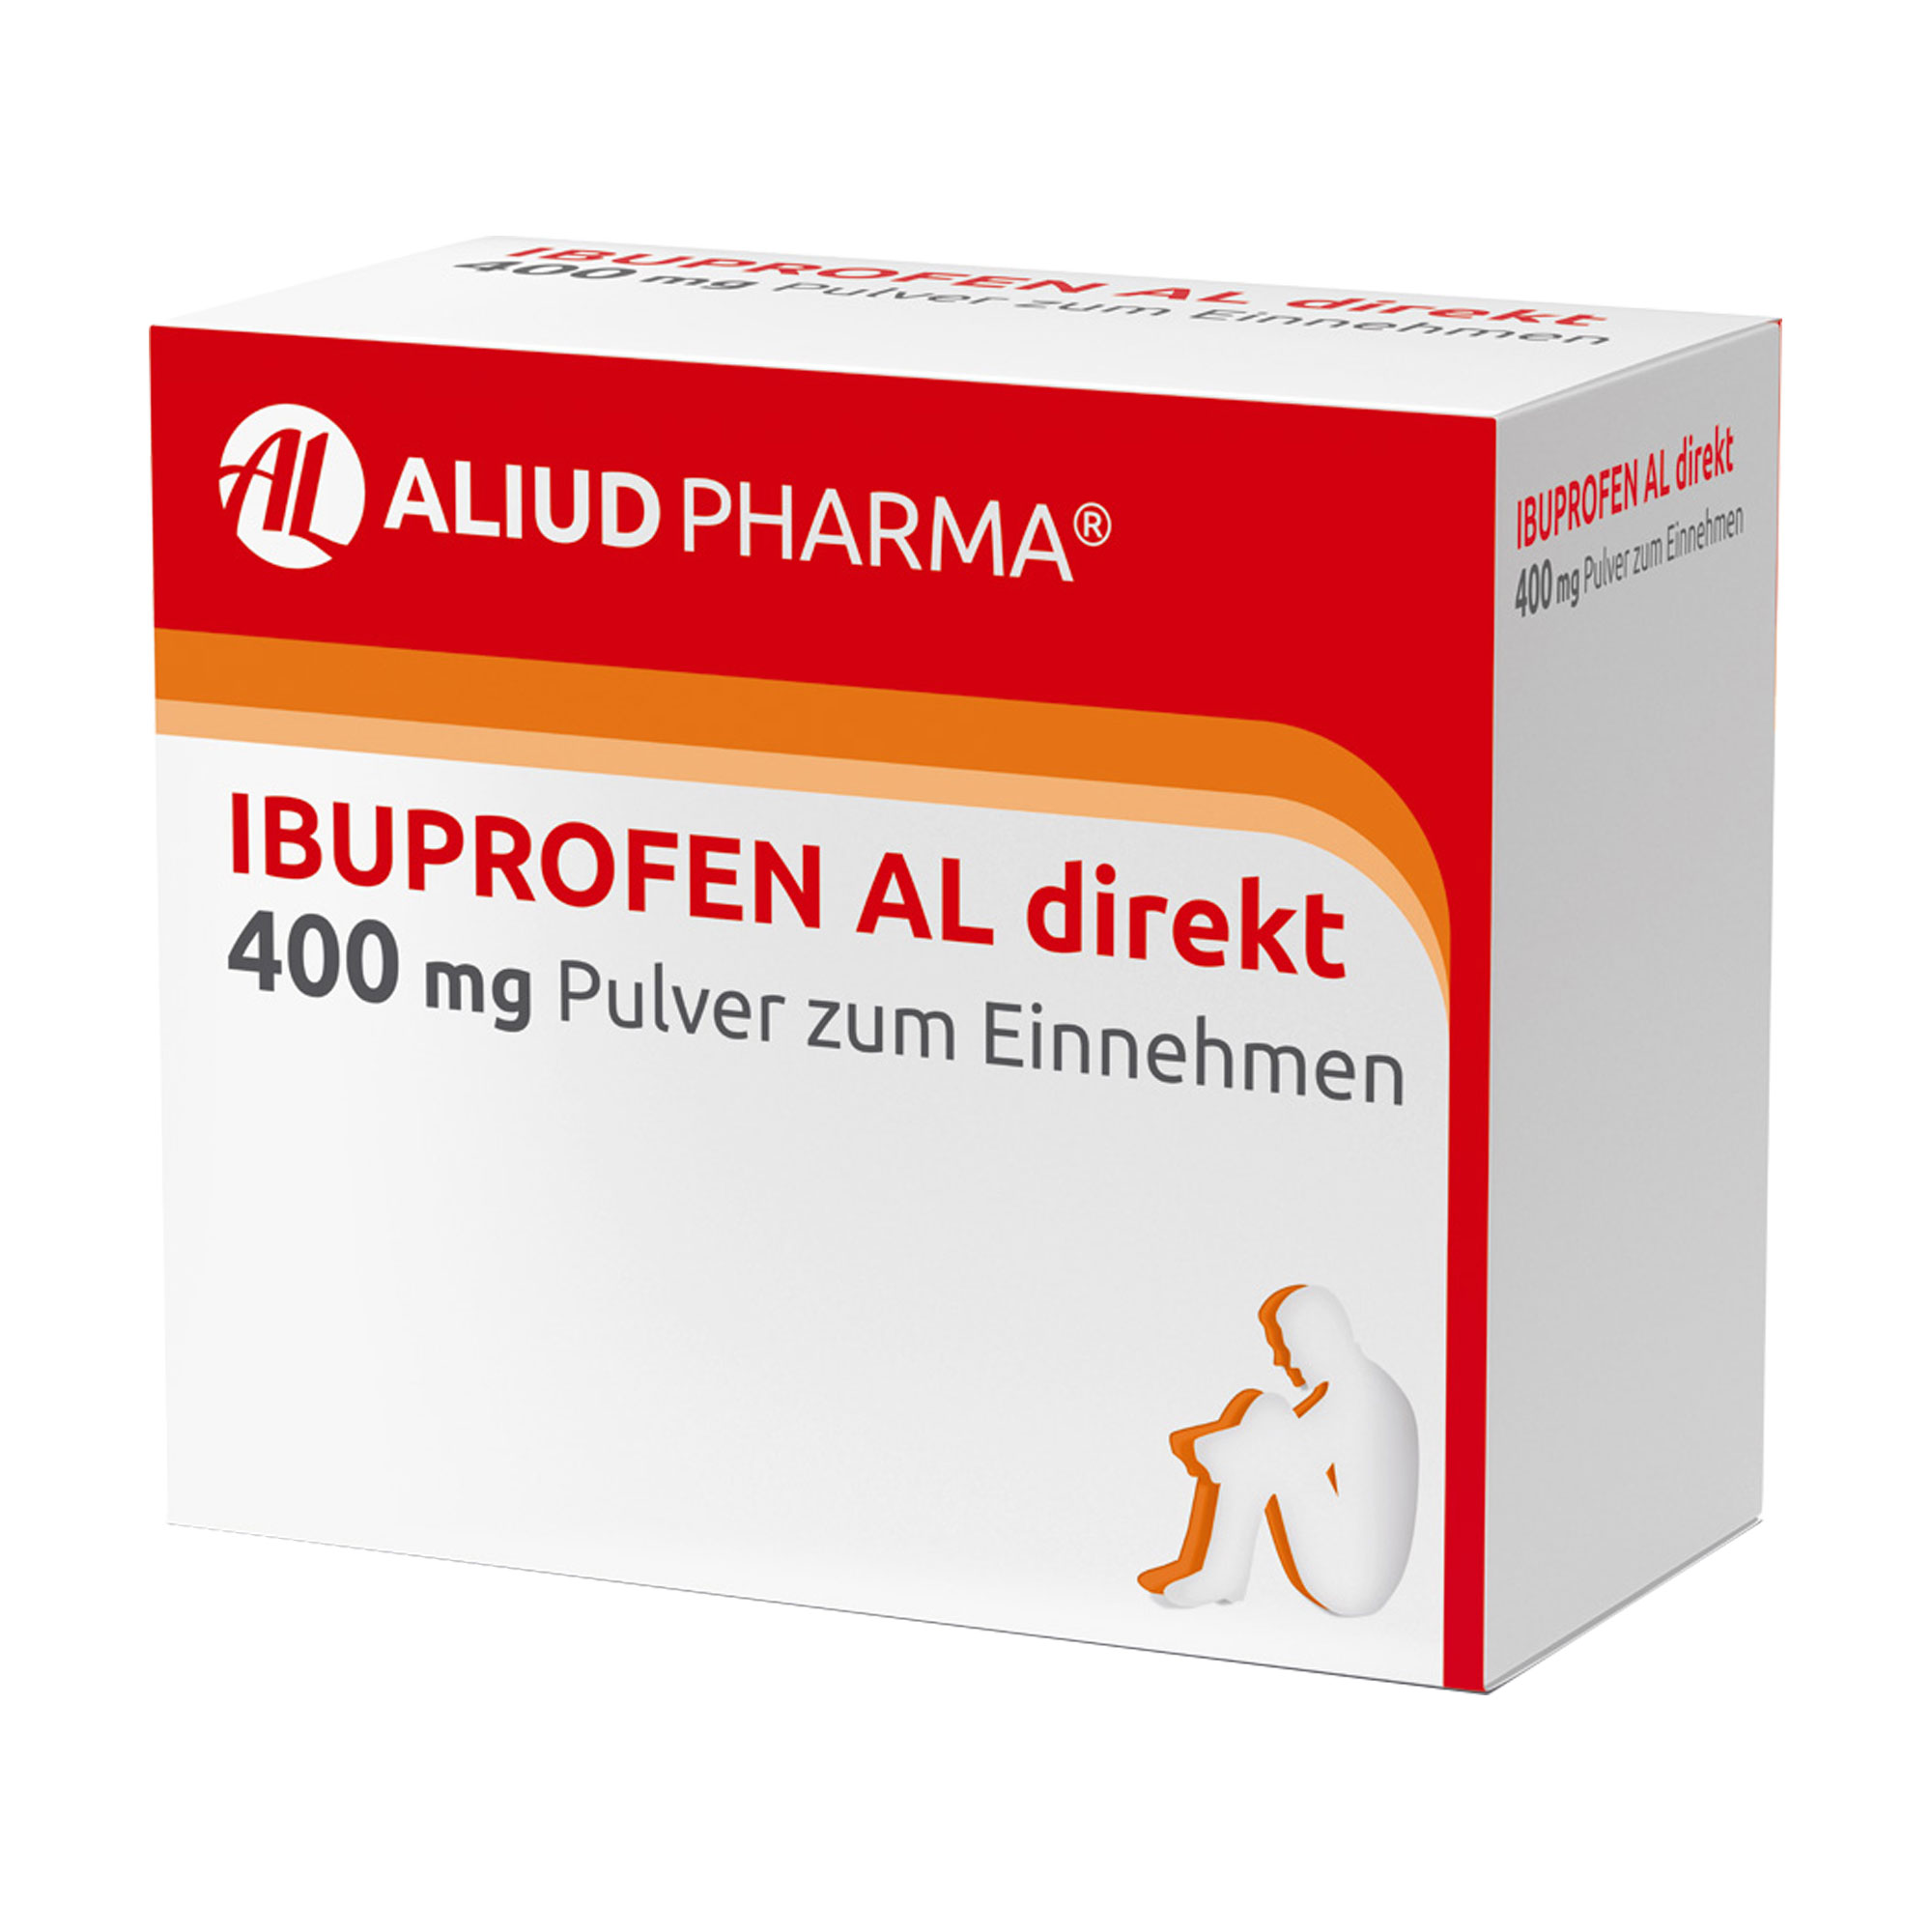 Ibuprofen AL direkt 400 mg Pulver zum Einnehmen